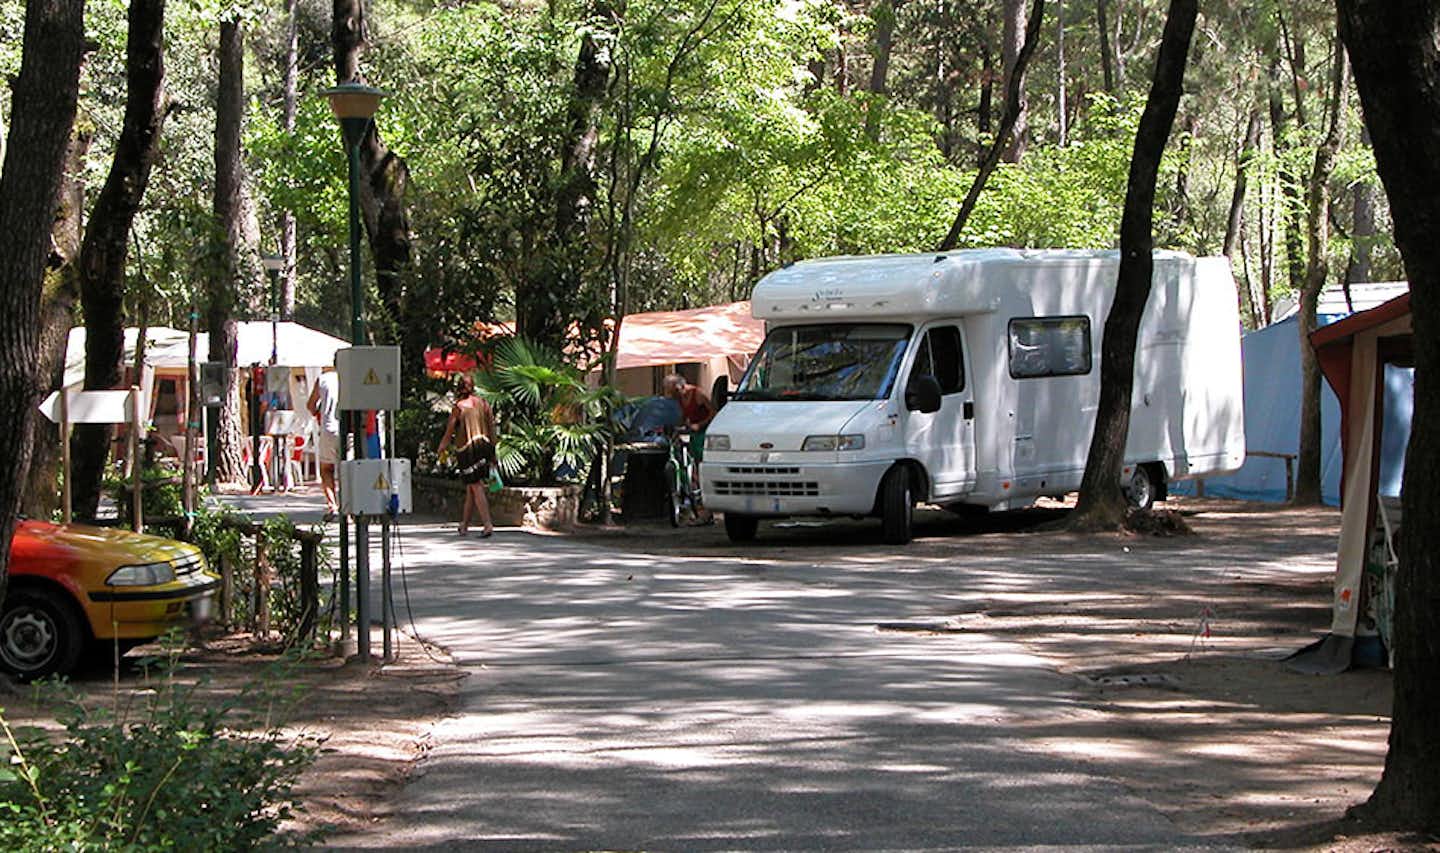 Camping al Bosco - Strasse auf dem Campingplatz mit Wohnmobil auf einem Stellplatz zwischen Bäumen